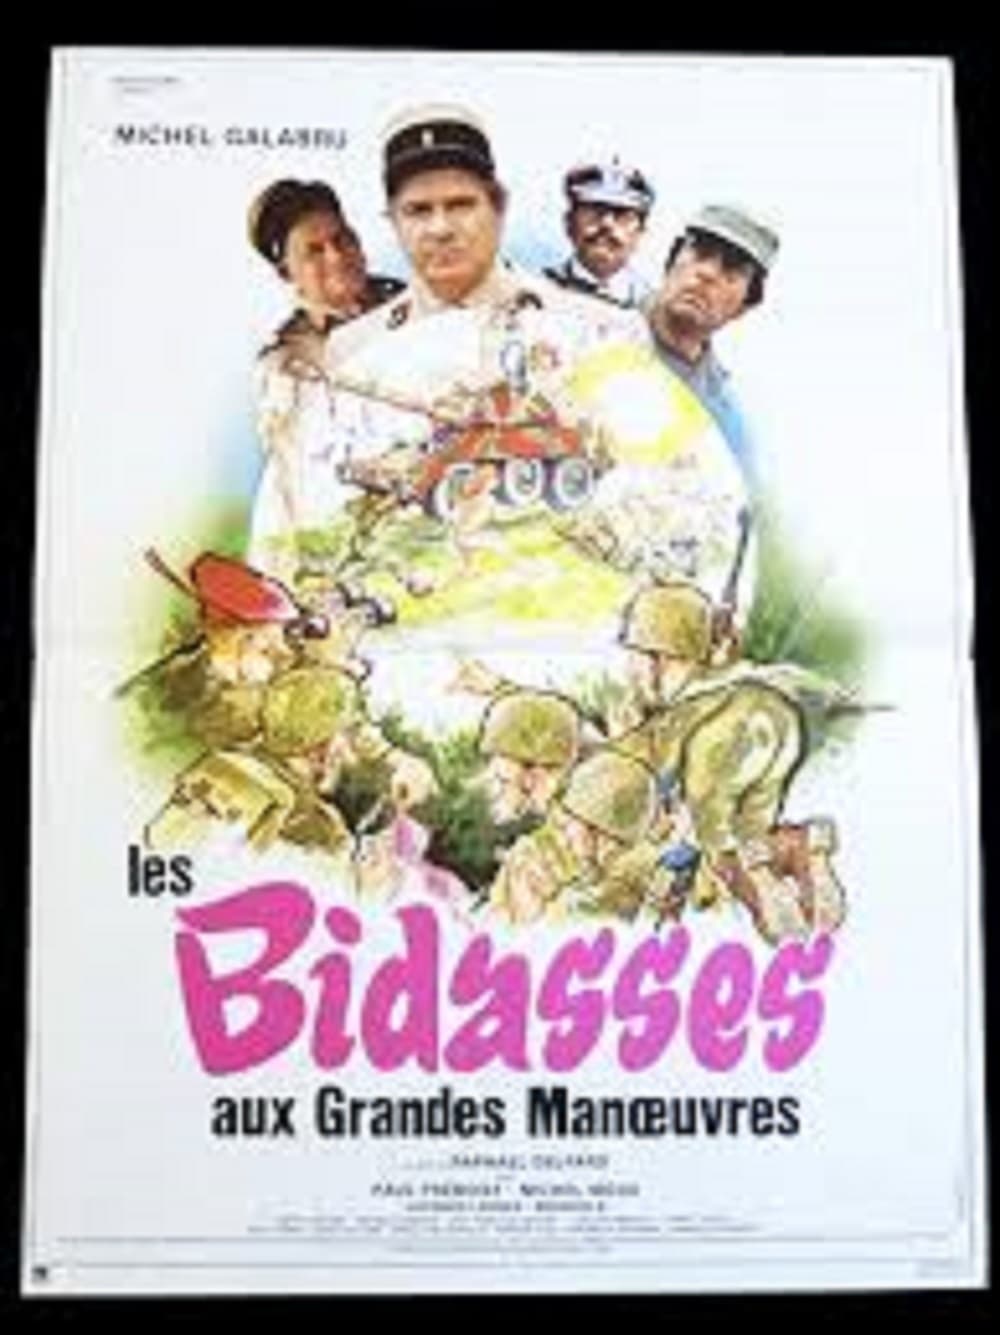 Plakat von "Les bidasses aux grandes manoeuvres"